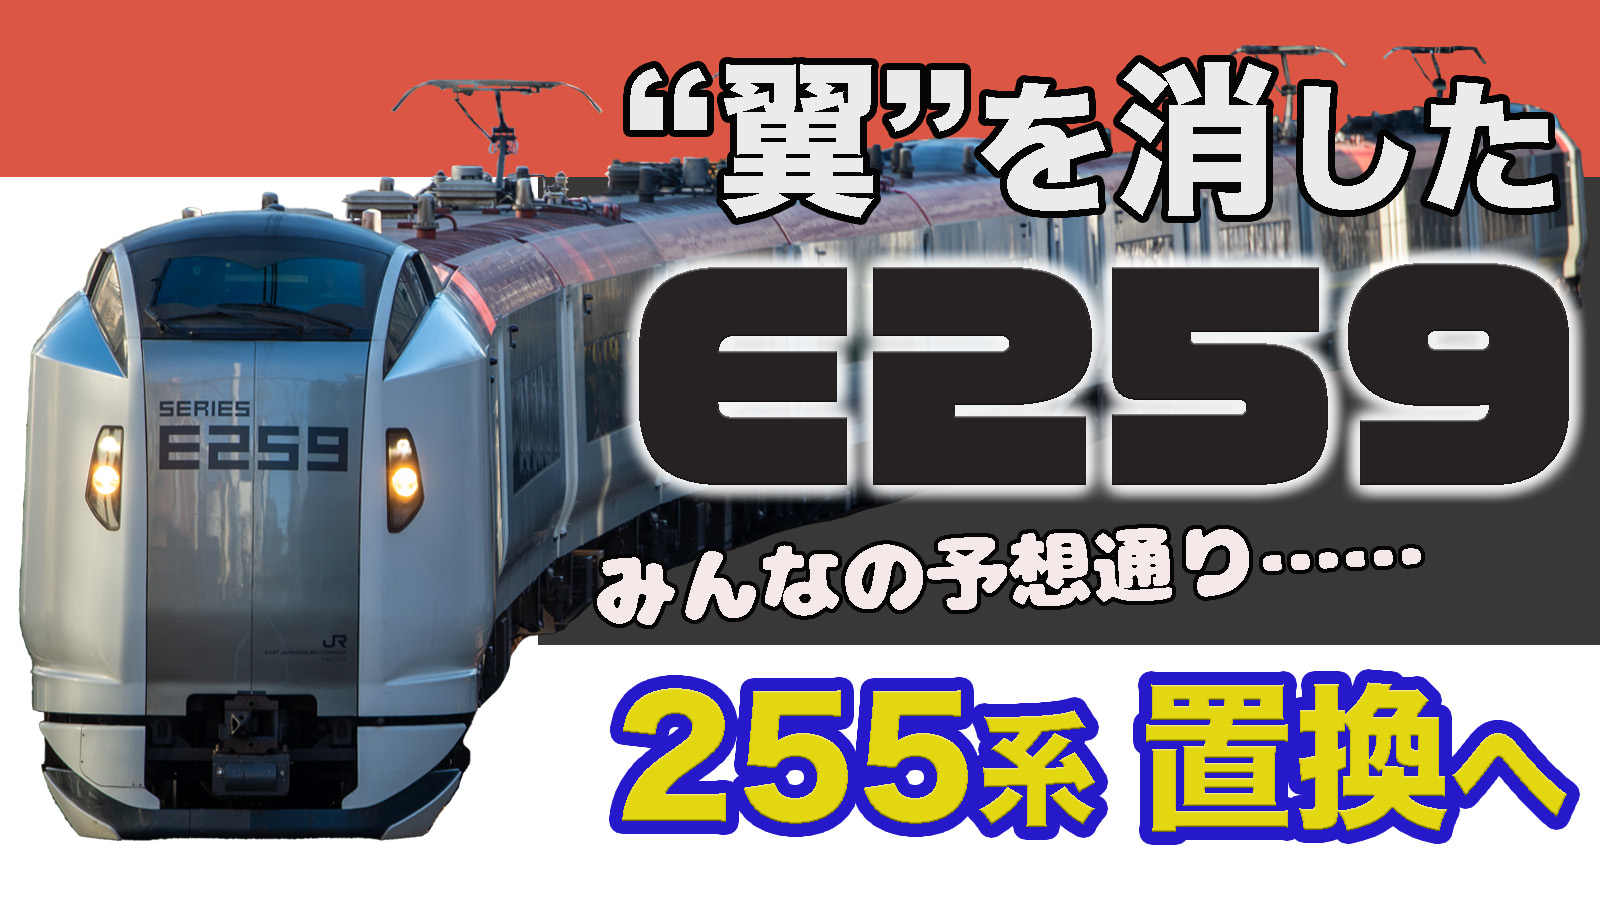 N'EX】成田エクスプレスE259系 房総特急255系置換に活用へ | 鉄道